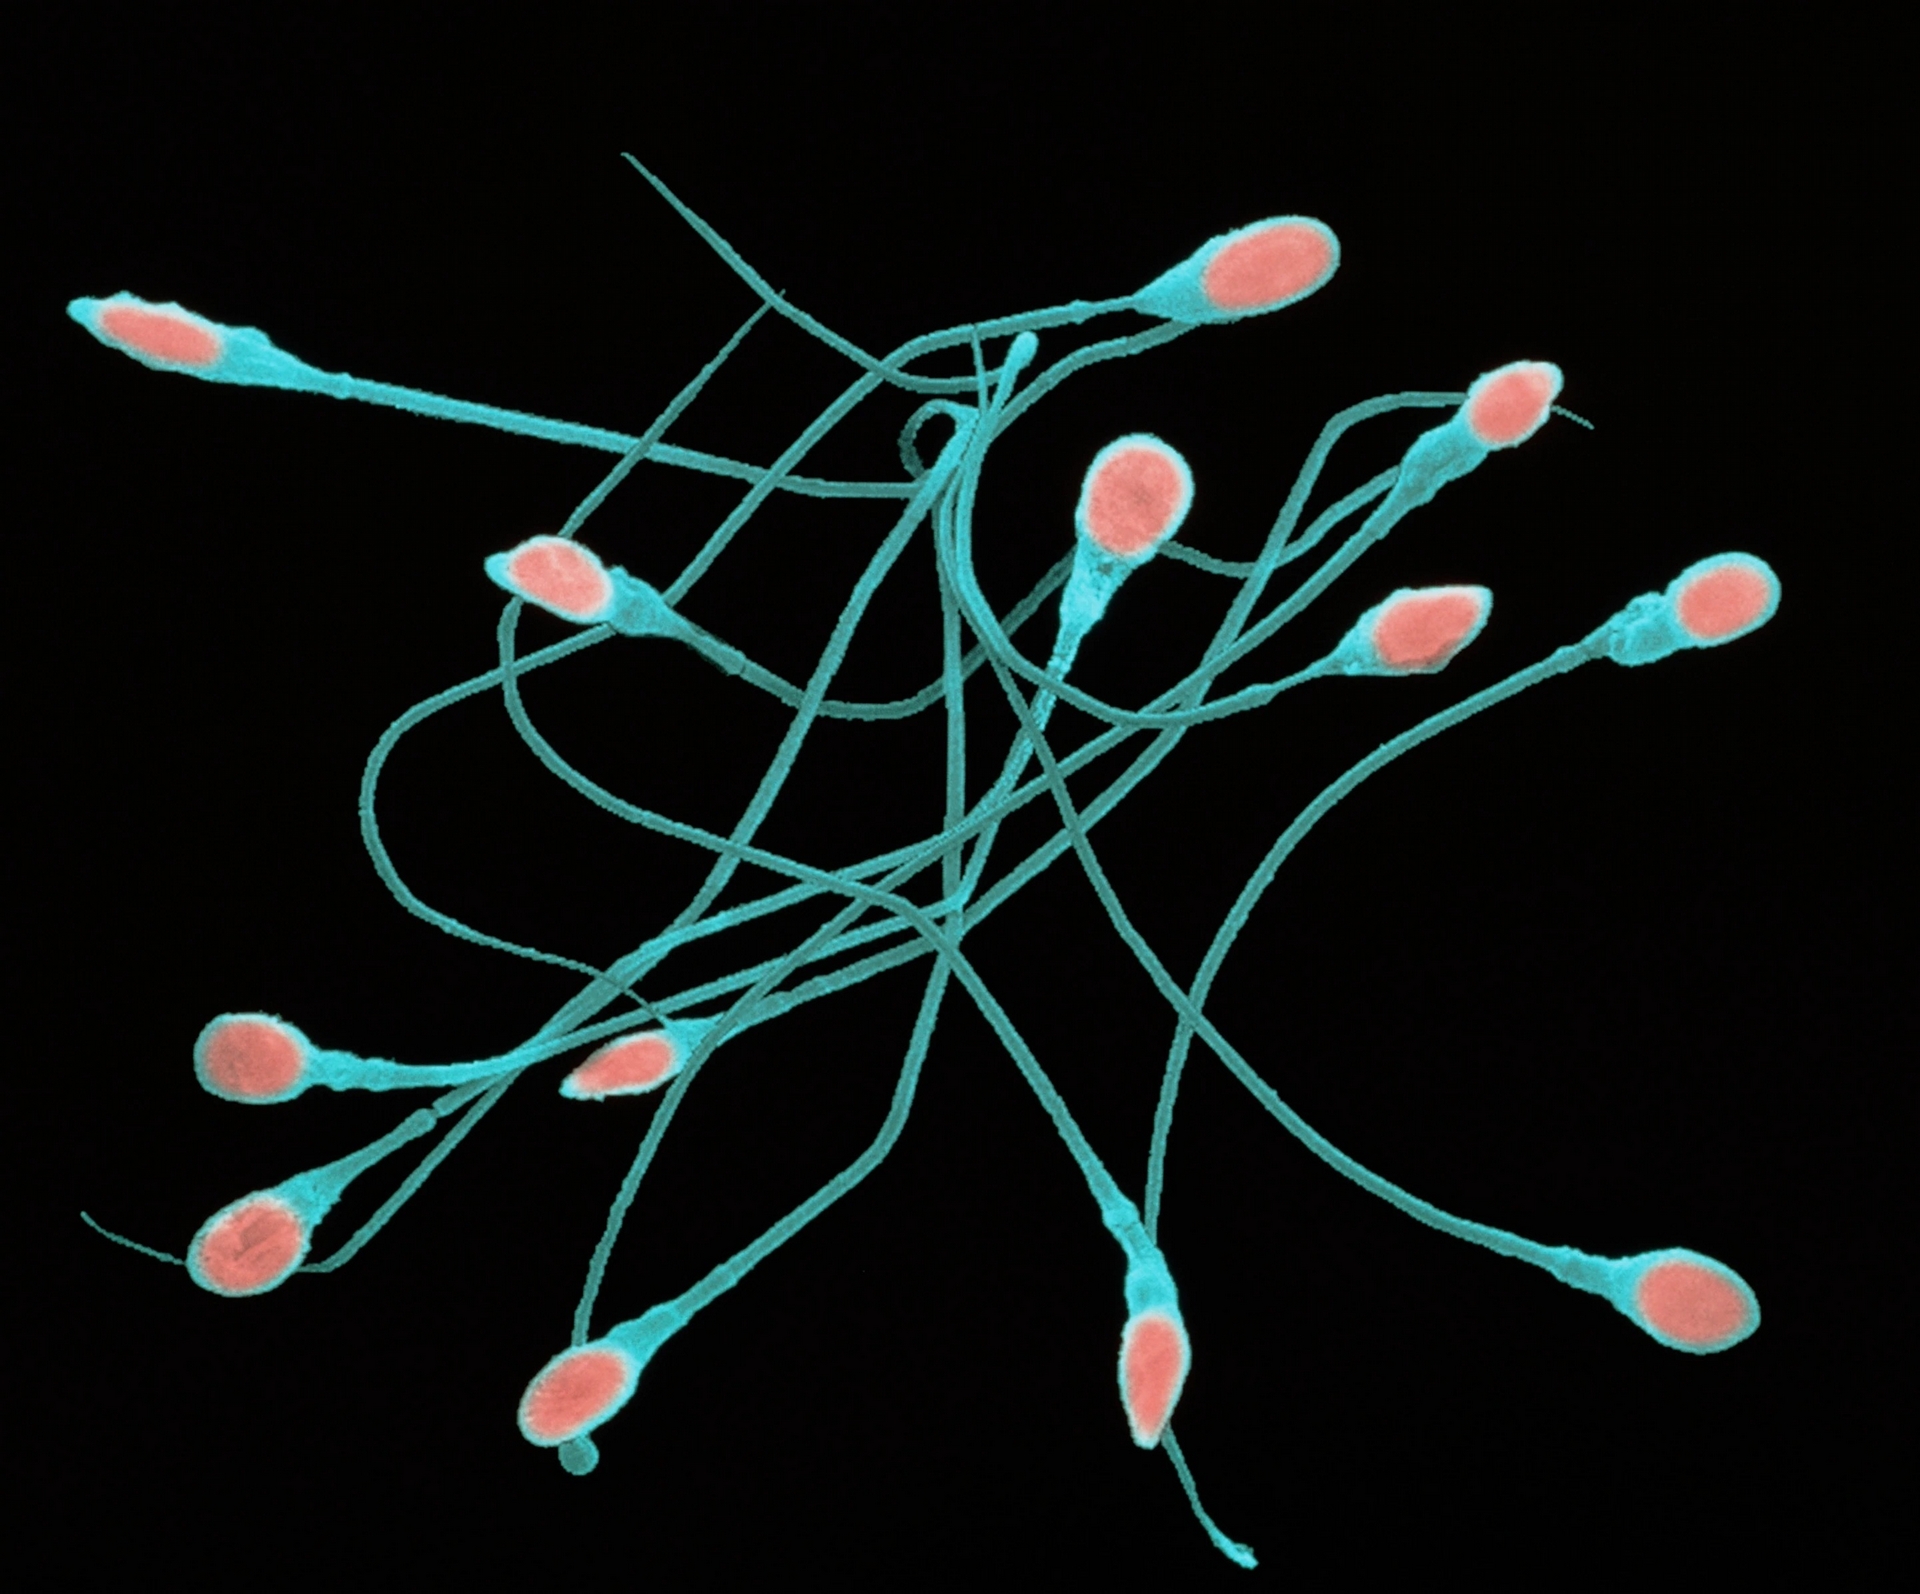 數個成熟人類精子（又稱為精蟲）的彩色掃描式電子顯微影像（SEM）。每個精子的長度大約是65微米，可大致分成頭部（紅色）、頸部和尾部（藍色）。MICROGRAPH BY DR TONY BRAIN, SCIENCE PHOTO LIBRARY 